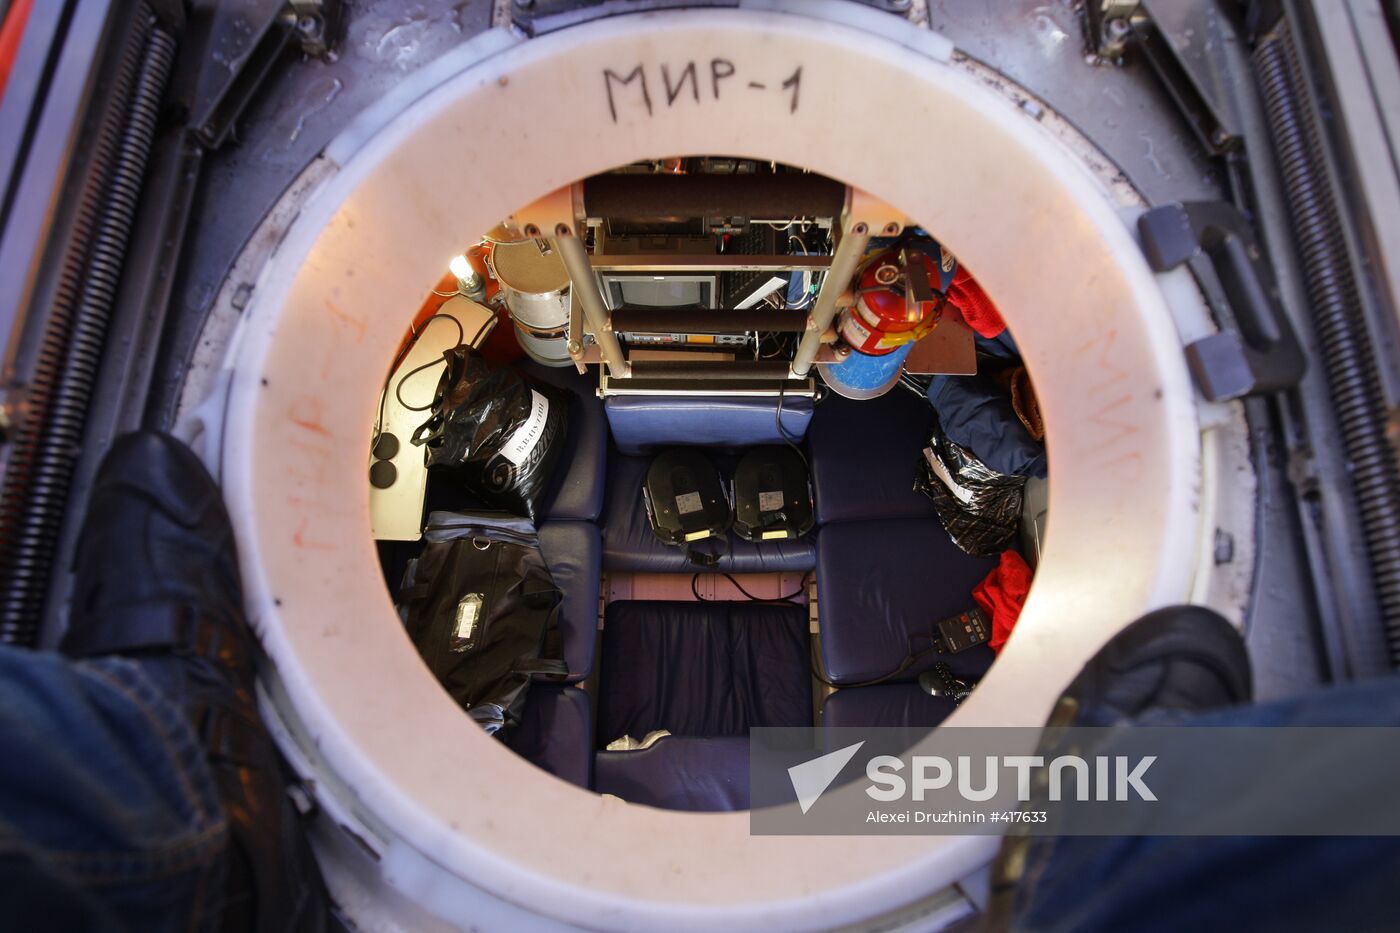 Mir 1 submersible